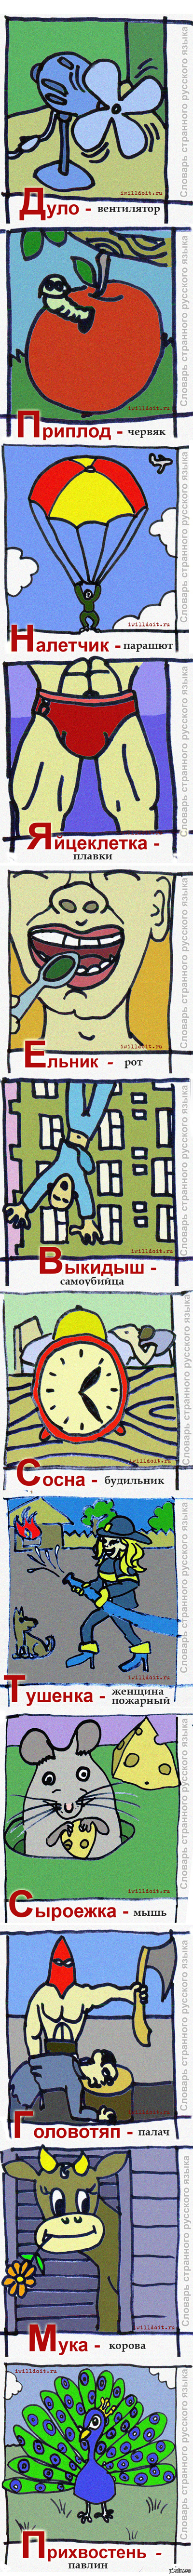    -2   - <a href="http://pikabu.ru/story/slovar_strannogo_russkogo_yazyika_1565498">http://pikabu.ru/story/_1565498</a>